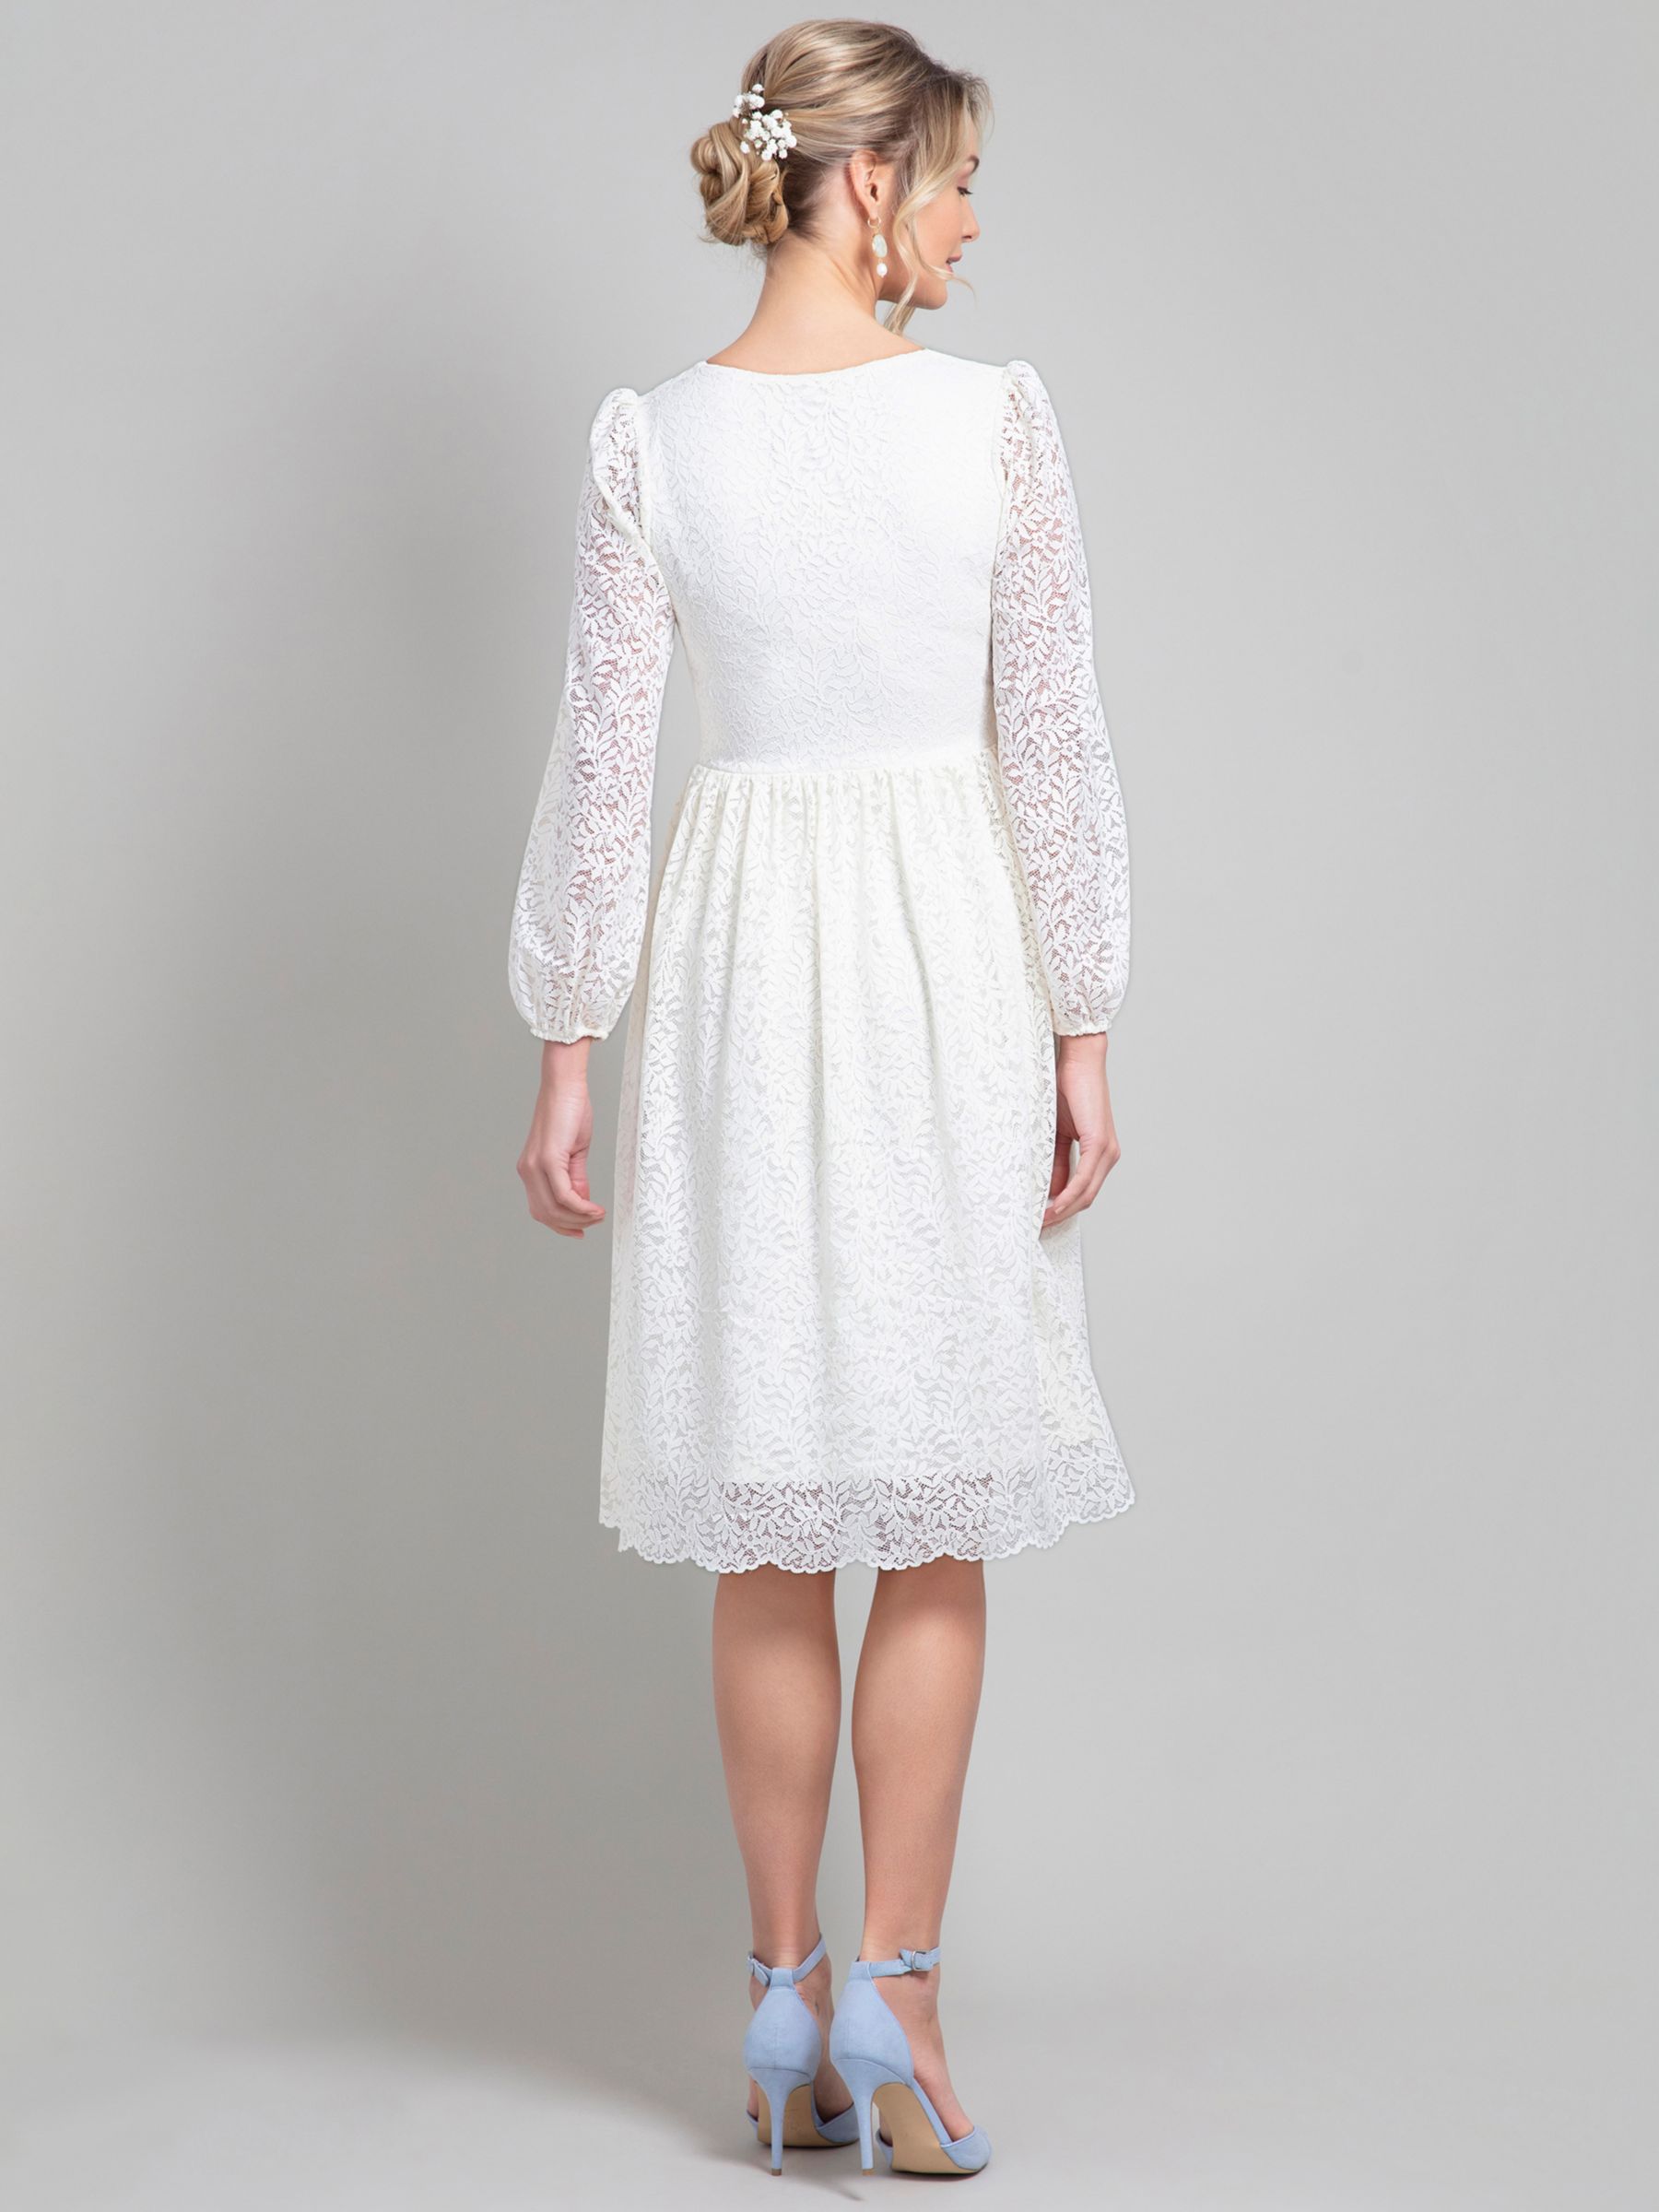 Alie Street Lauren Lace Wedding Dress, Ivory, 14-16